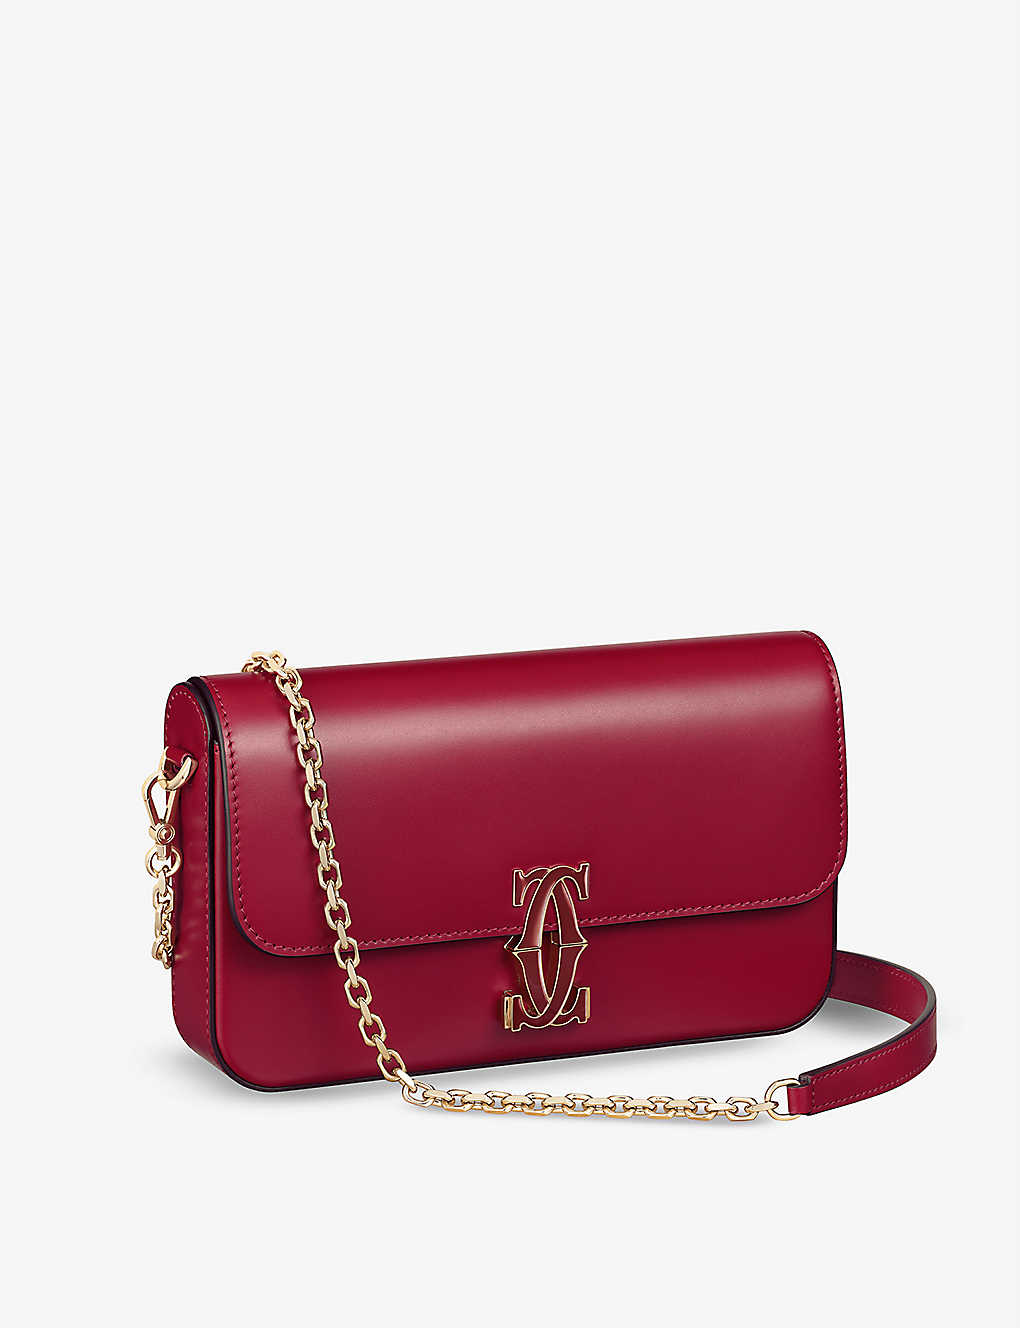 Cartier Womens Cherry Red Double C De Mini Leather Shoulder Bag